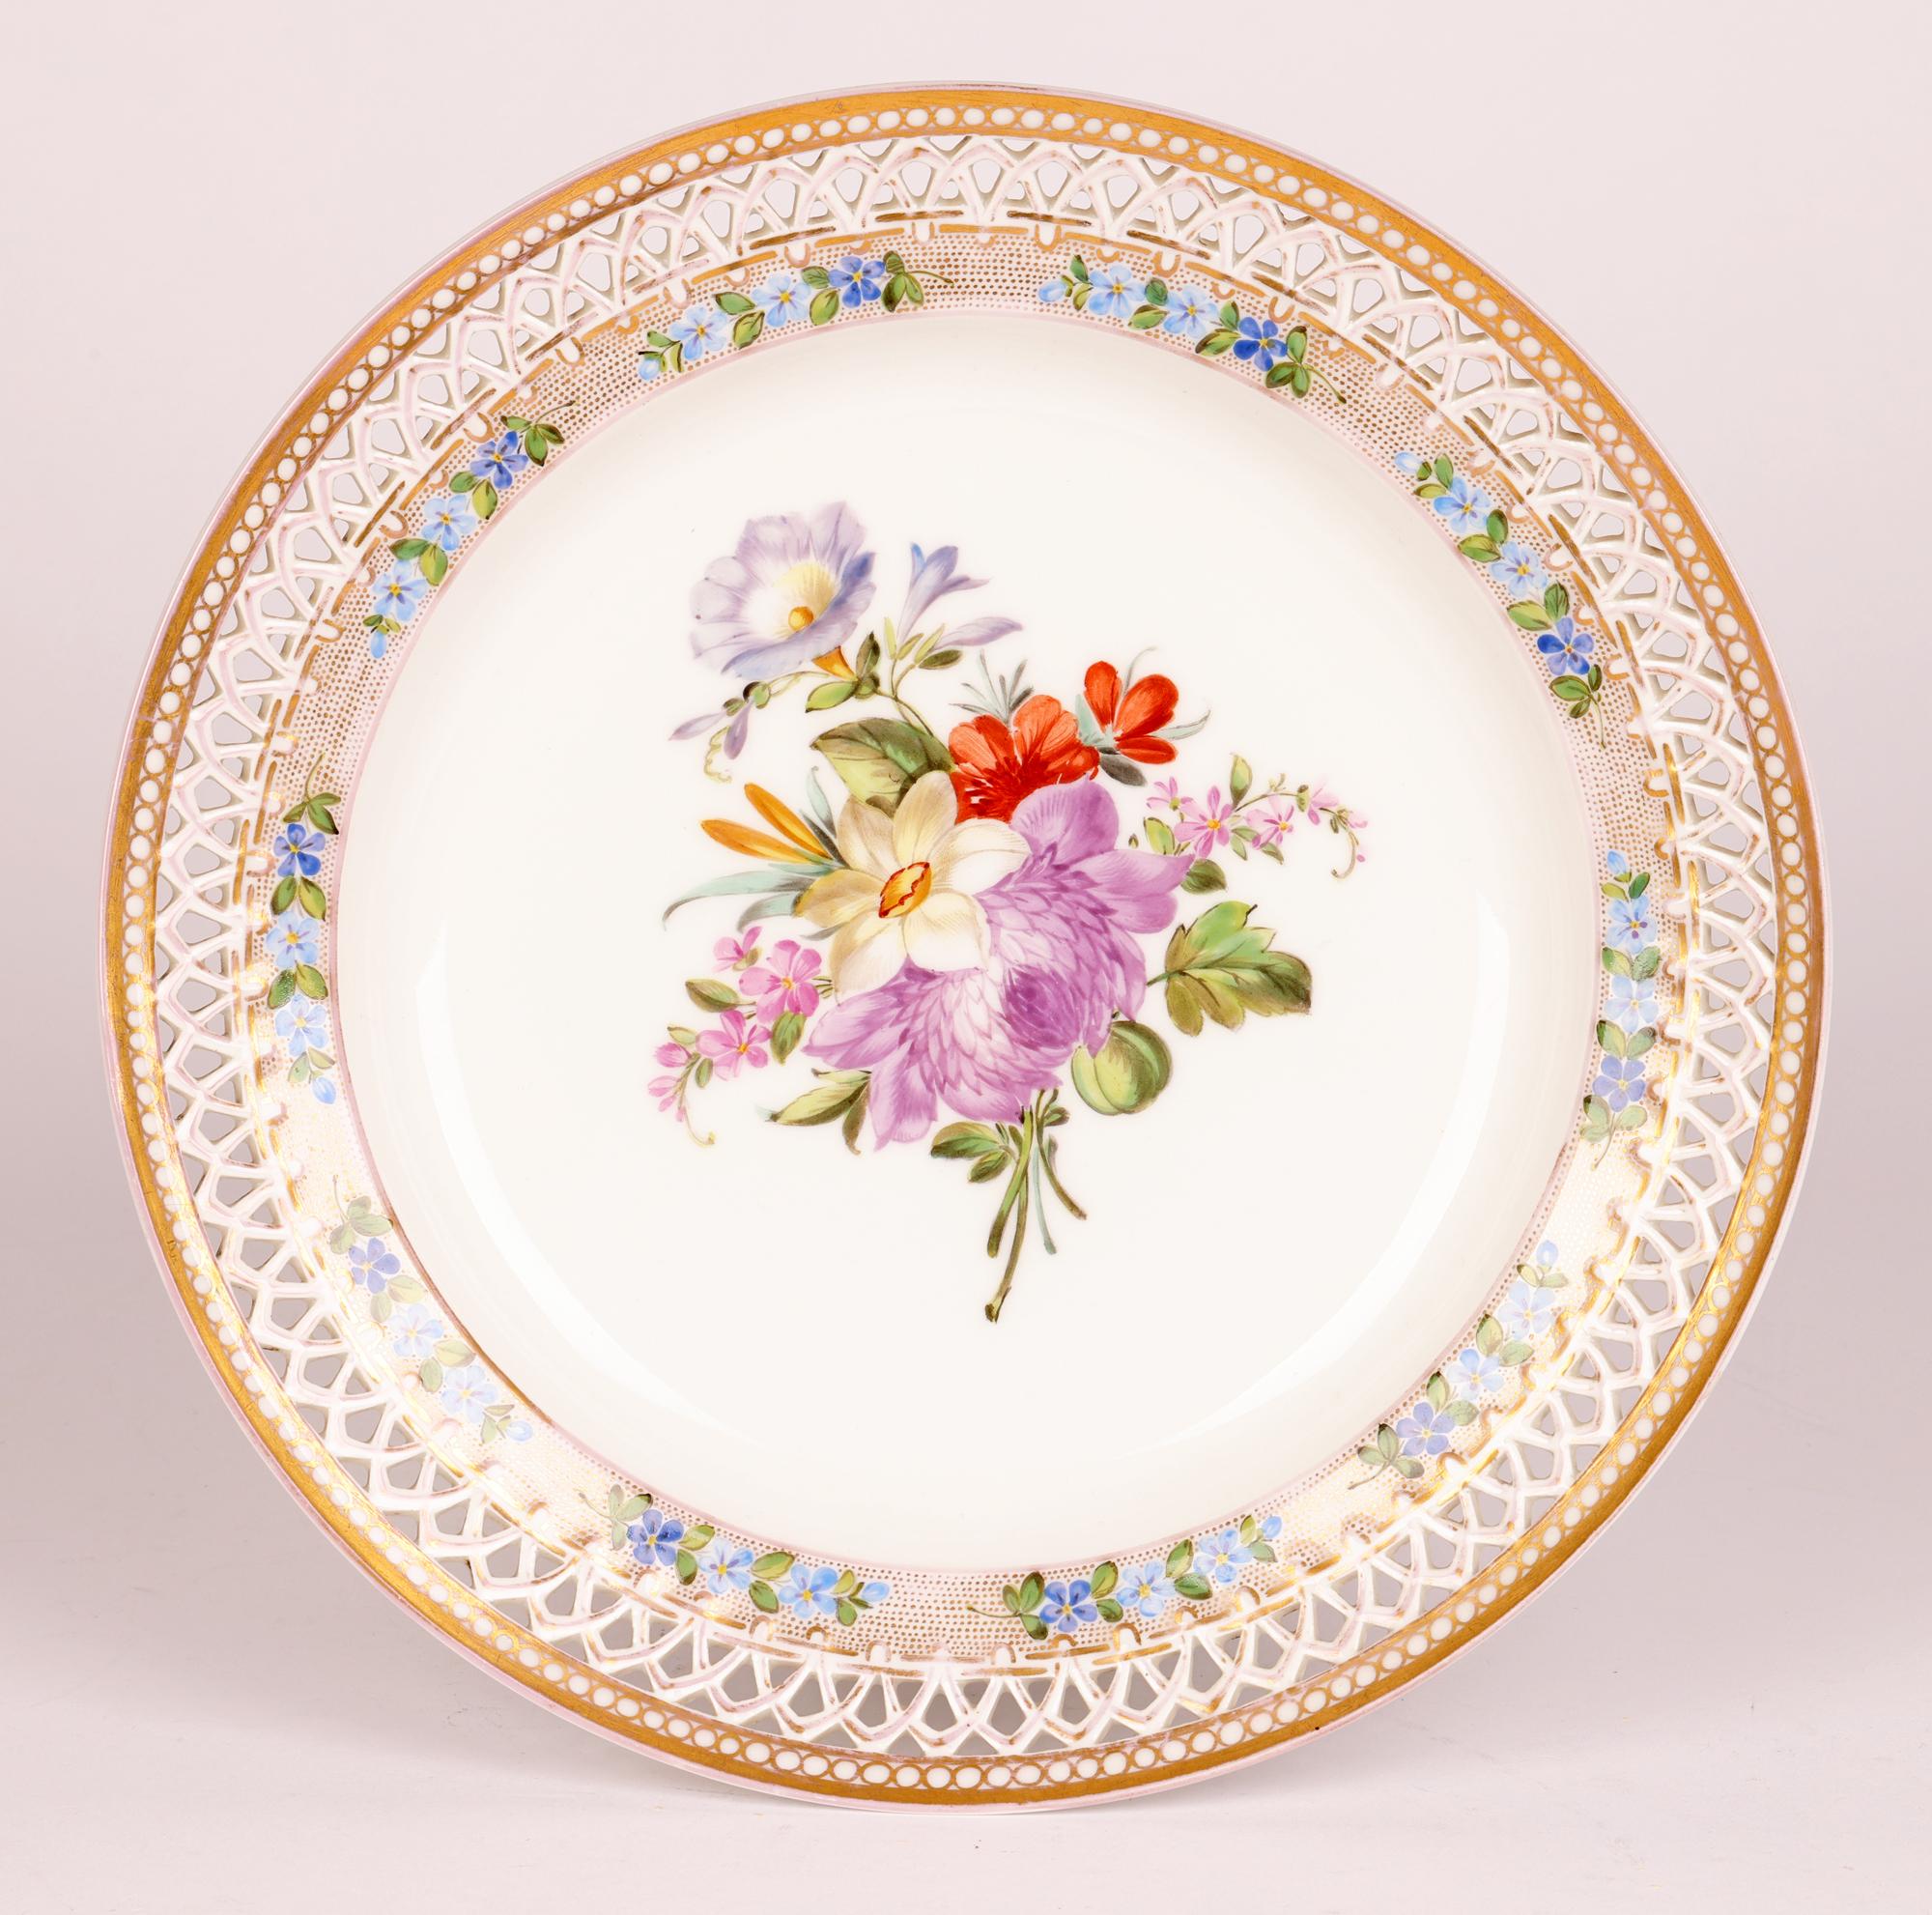 Une assiette de cabinet en porcelaine allemande très finement fabriquée avec un motif percé et un bord et peinte à la main avec des motifs floraux, fabriquée par la célèbre Royal Porcelain Factory, Berlin, vers 1890. 

L'usine de Berlin est l'un